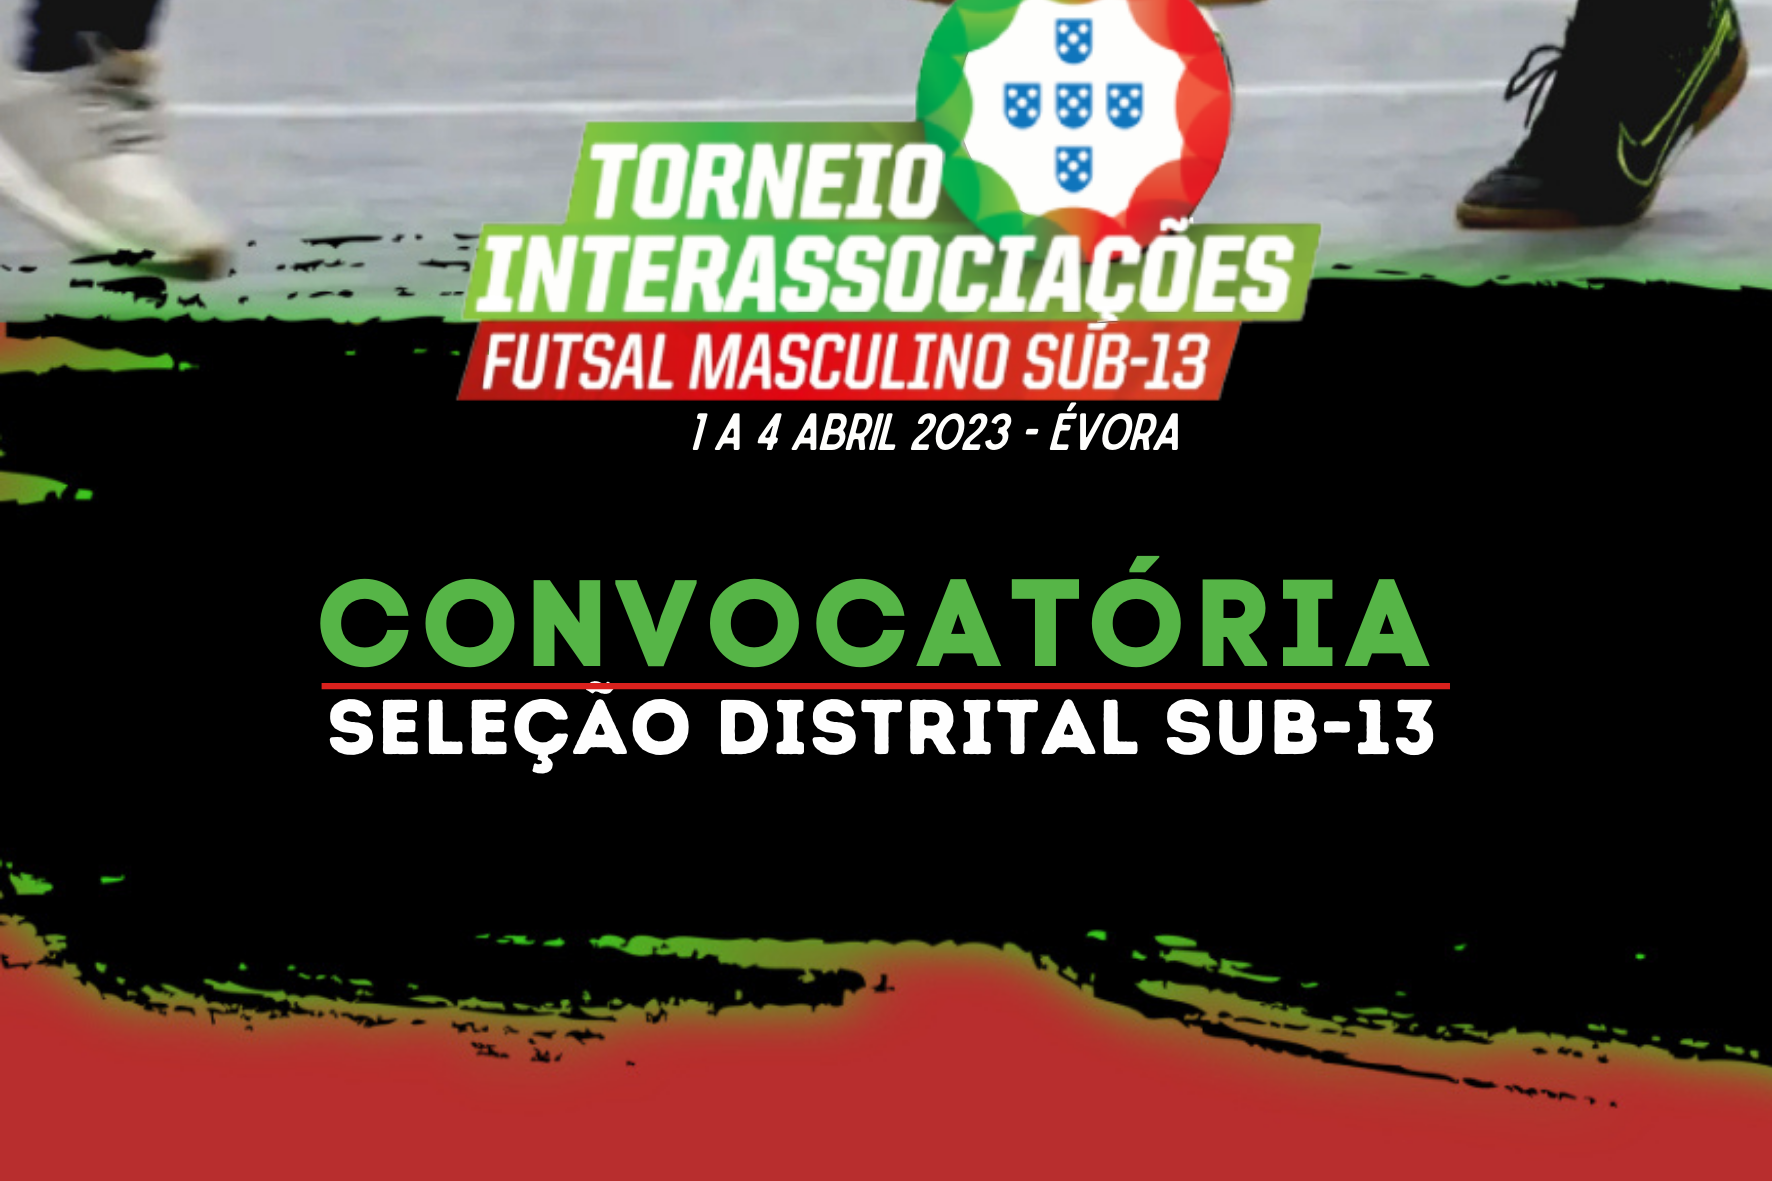 CONVOCATÓRIA | TORNEIO INTERASSOCIAÇÕES DE FUTSAL MASCULINO DE SUB-13